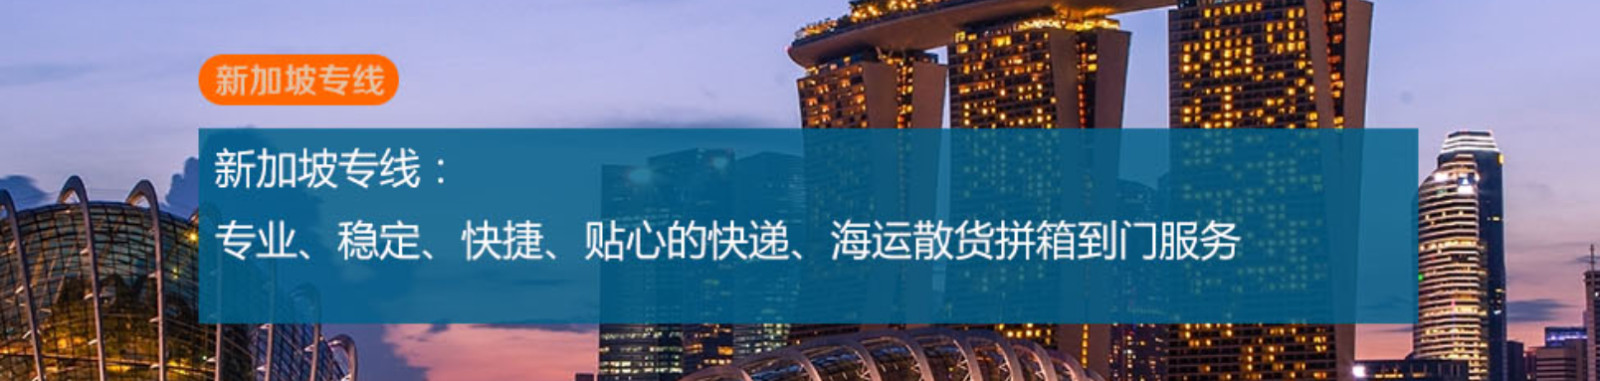 新加坡专线 新加坡空运专线 新加坡海运专线 新加坡双清包税门到门